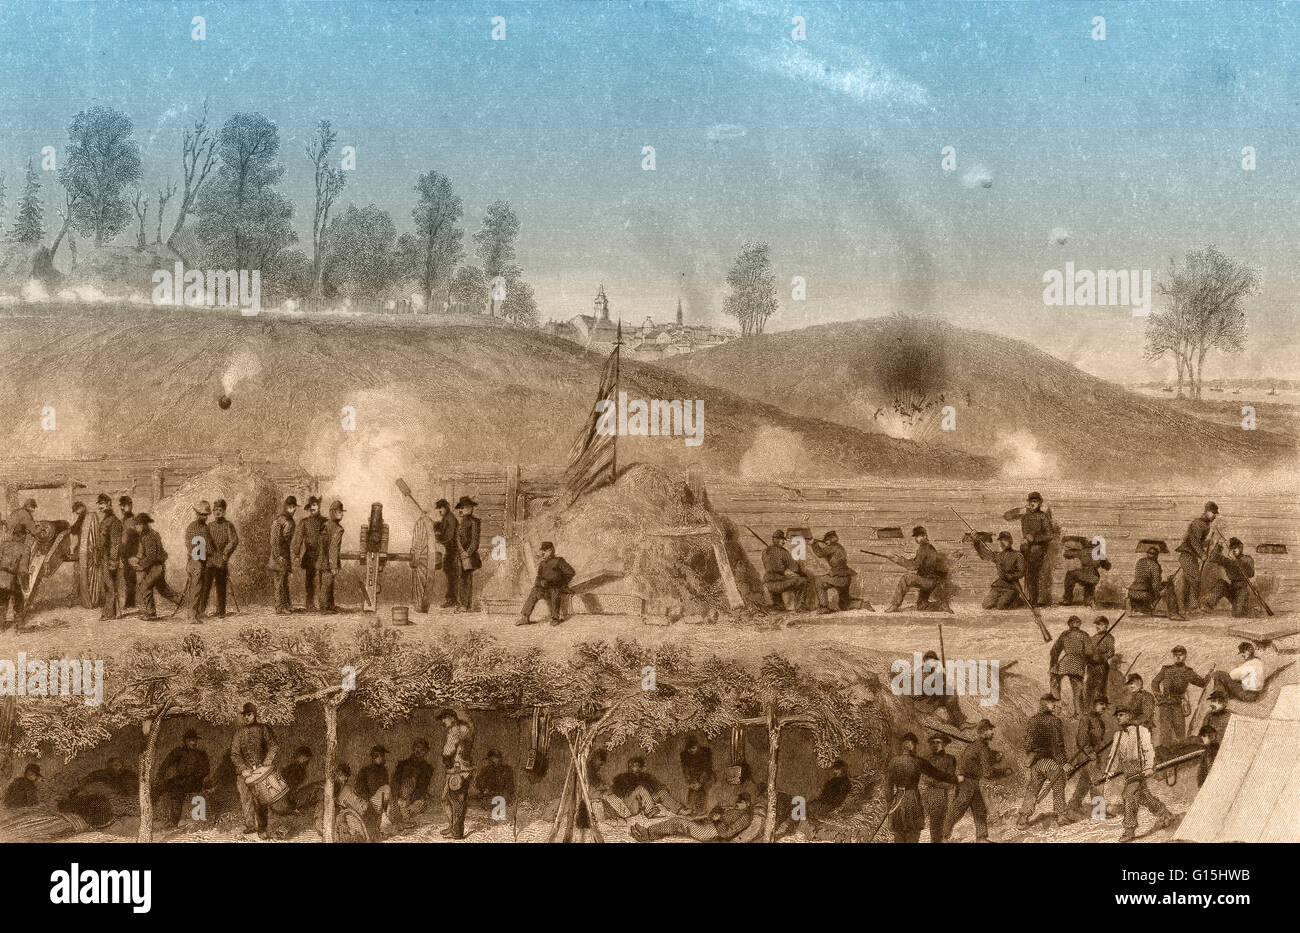 Renforcement de couleur illustration de la siège de Vicksburg en 1863, qui a été le point culminant de la campagne de Vicksburg et un point tournant de la guerre civile américaine. Les Confédérés avaient le contrôle de la ville-forteresse de Vicksburg, ce qui en fait un obstacle de th Banque D'Images